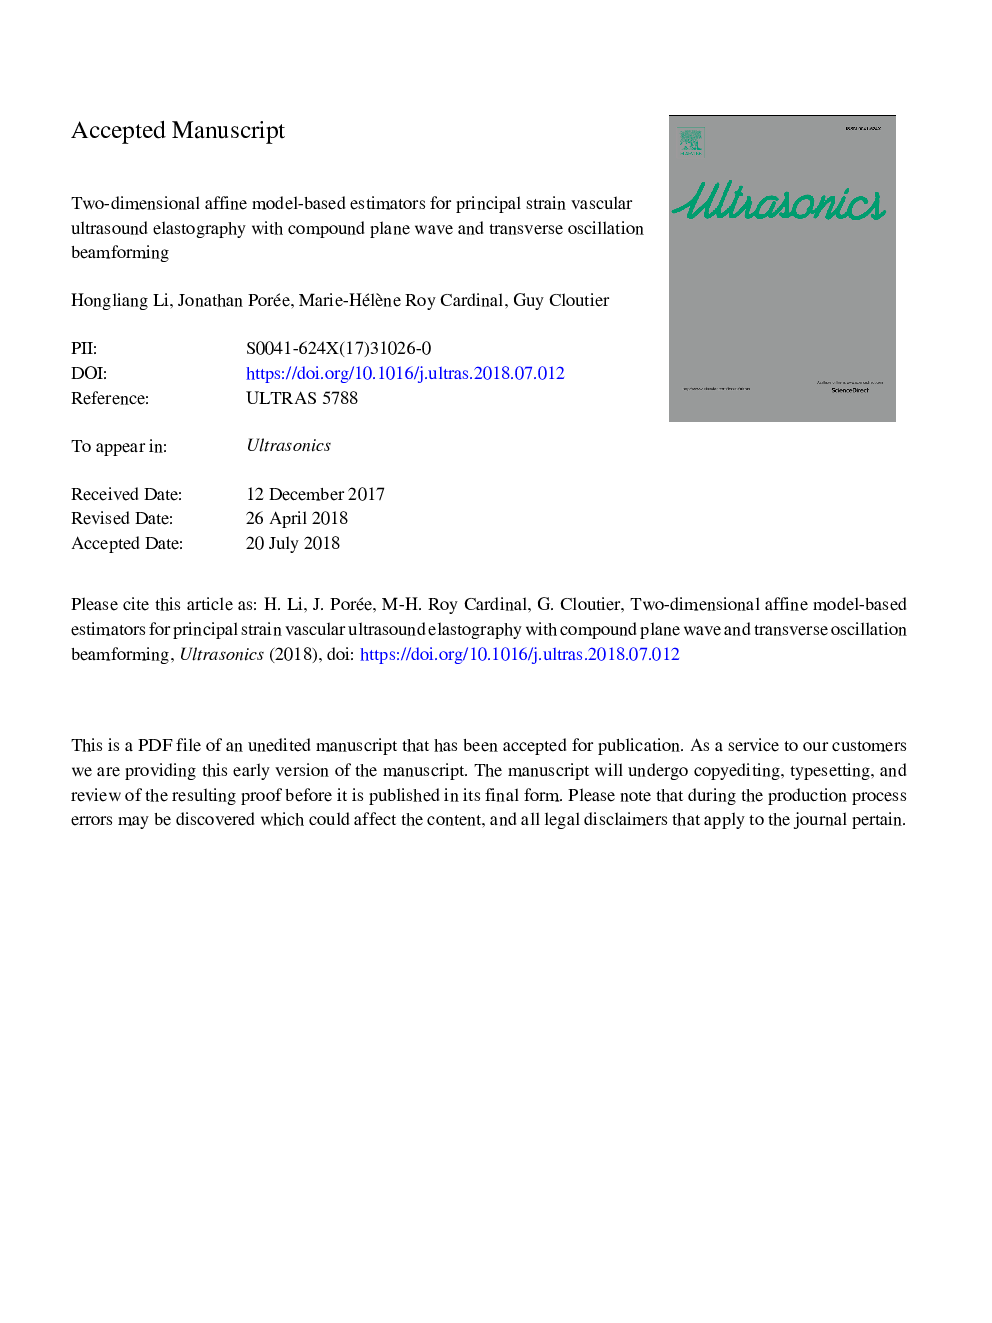 برآوردگرهای مدل مبتنی بر مدل دو بعدی برای الاستیوگرام اولتراسوند مغناطیسی با ولتاژ سیال مرکب و شکل پرتو نوسان عرضی